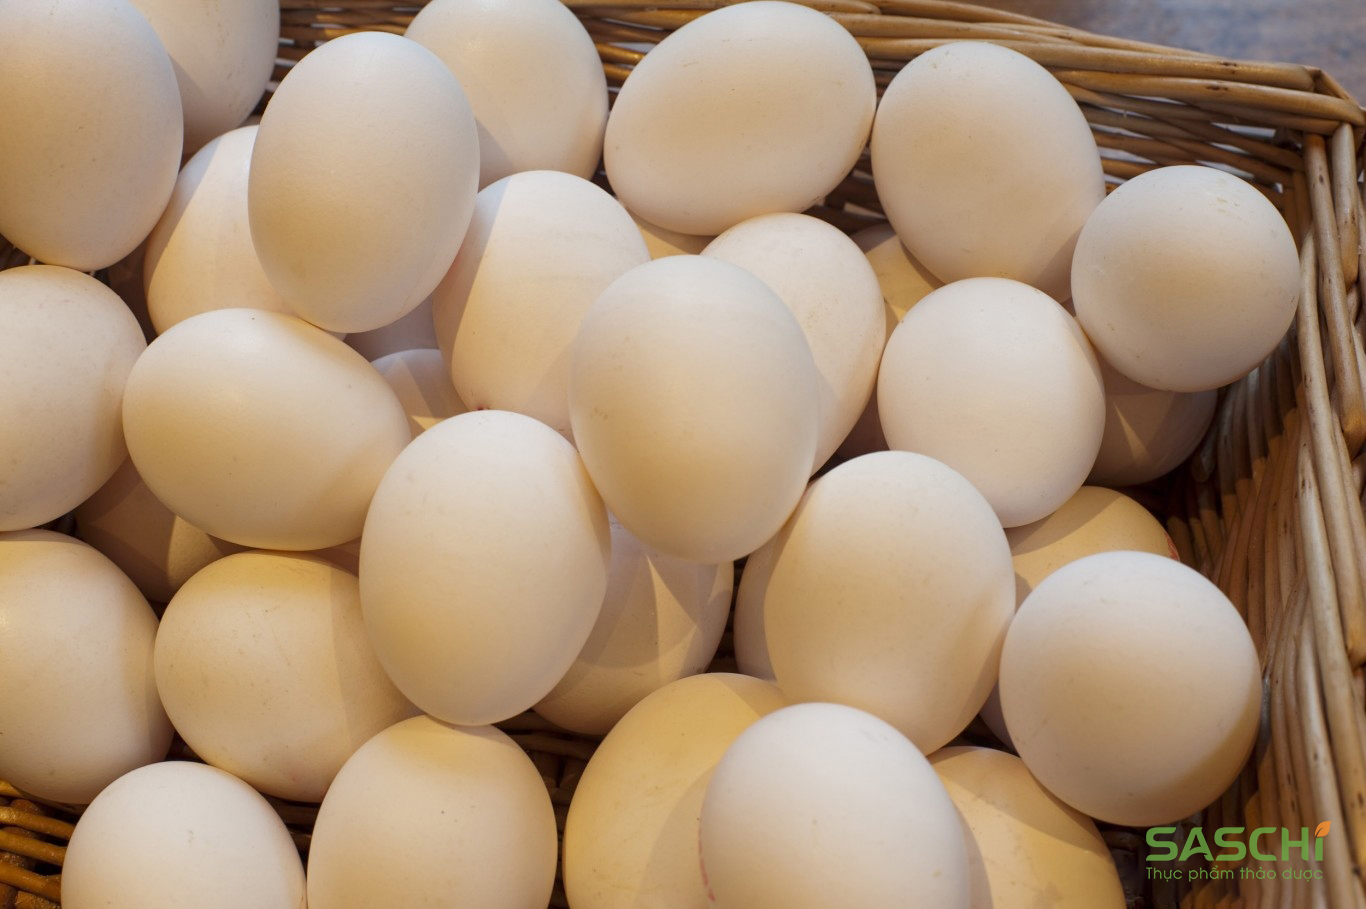 Hô biến trứng gà công nghiệp thành Trứng gà ta bằng hóa chất